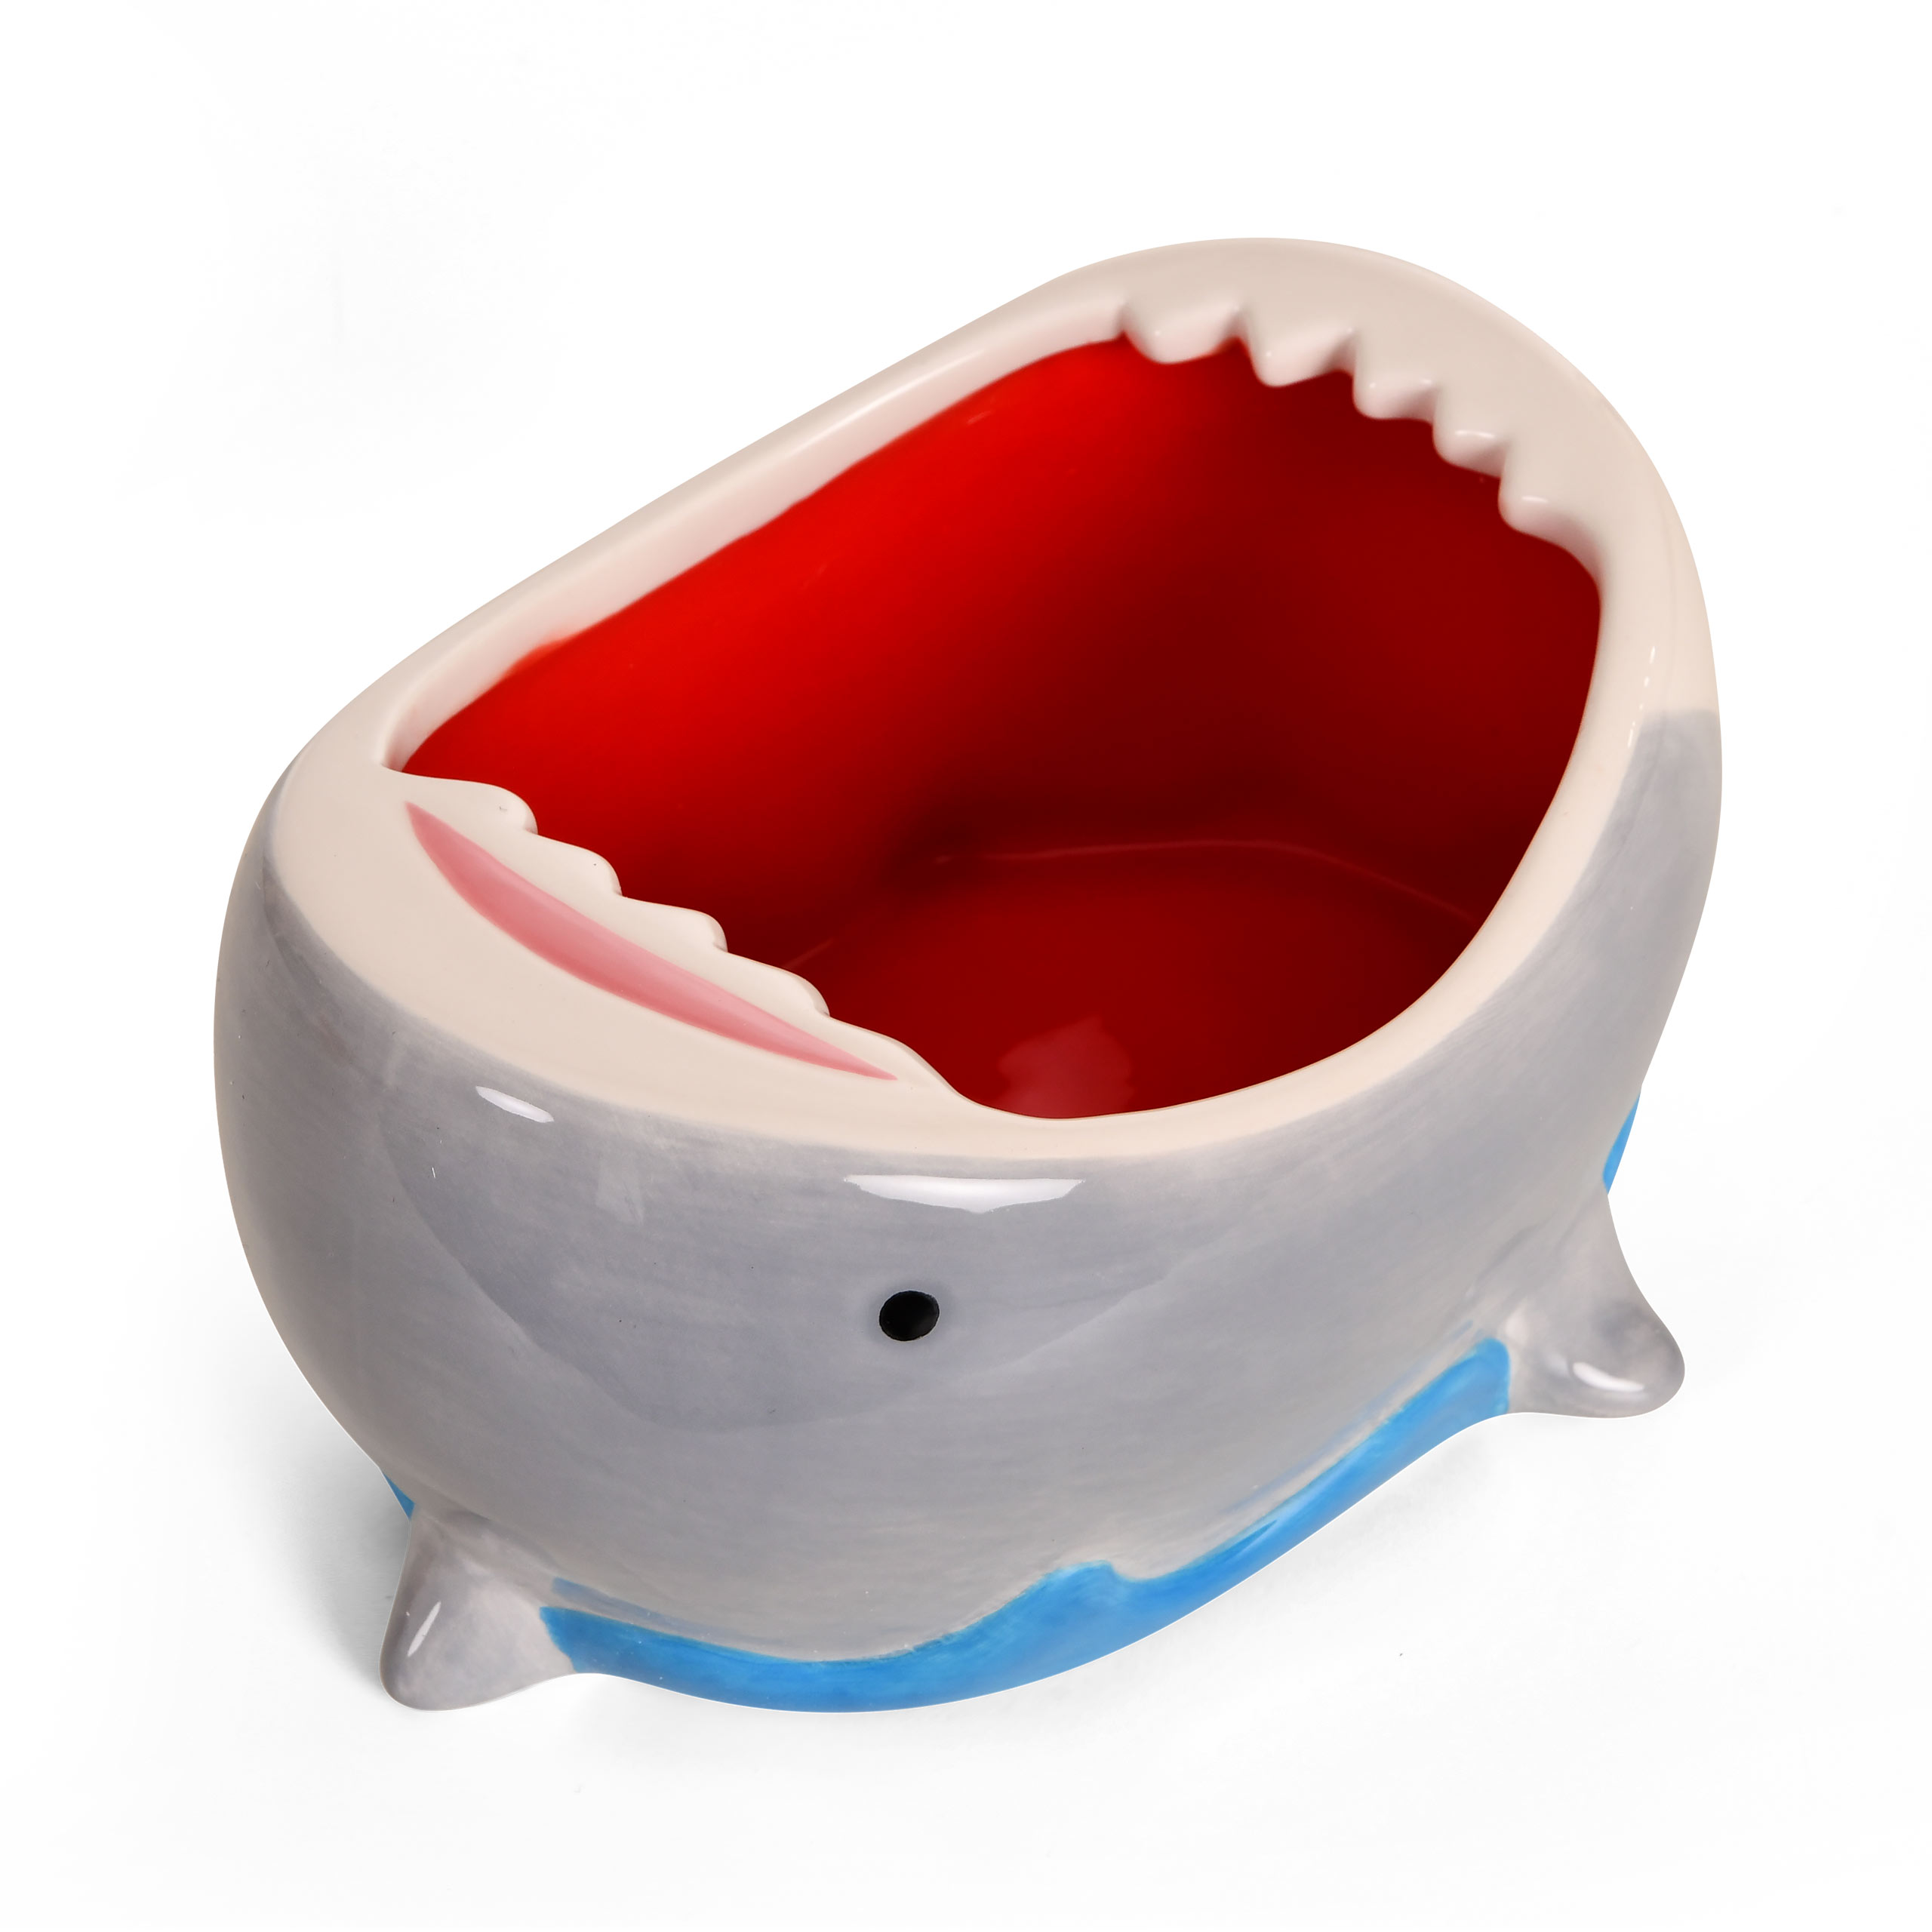 Shark Attack 3D Kom voor Jaws Fans